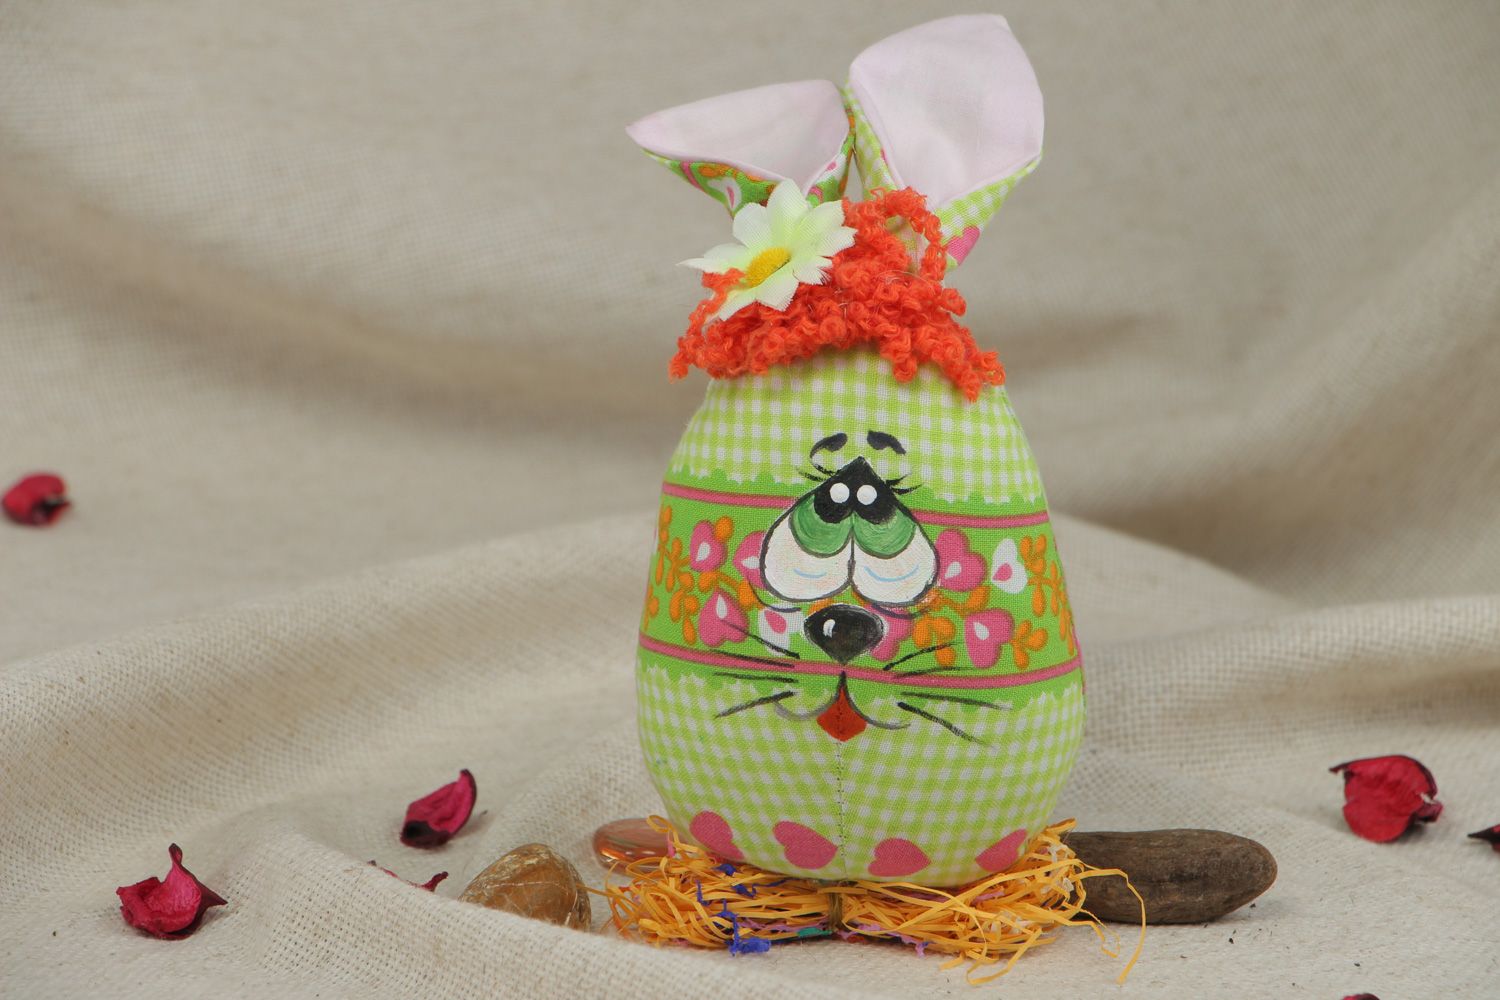 Мягкая игрушка из ткани пошитая вручную Пасхальный кролик-яйцо фото 5